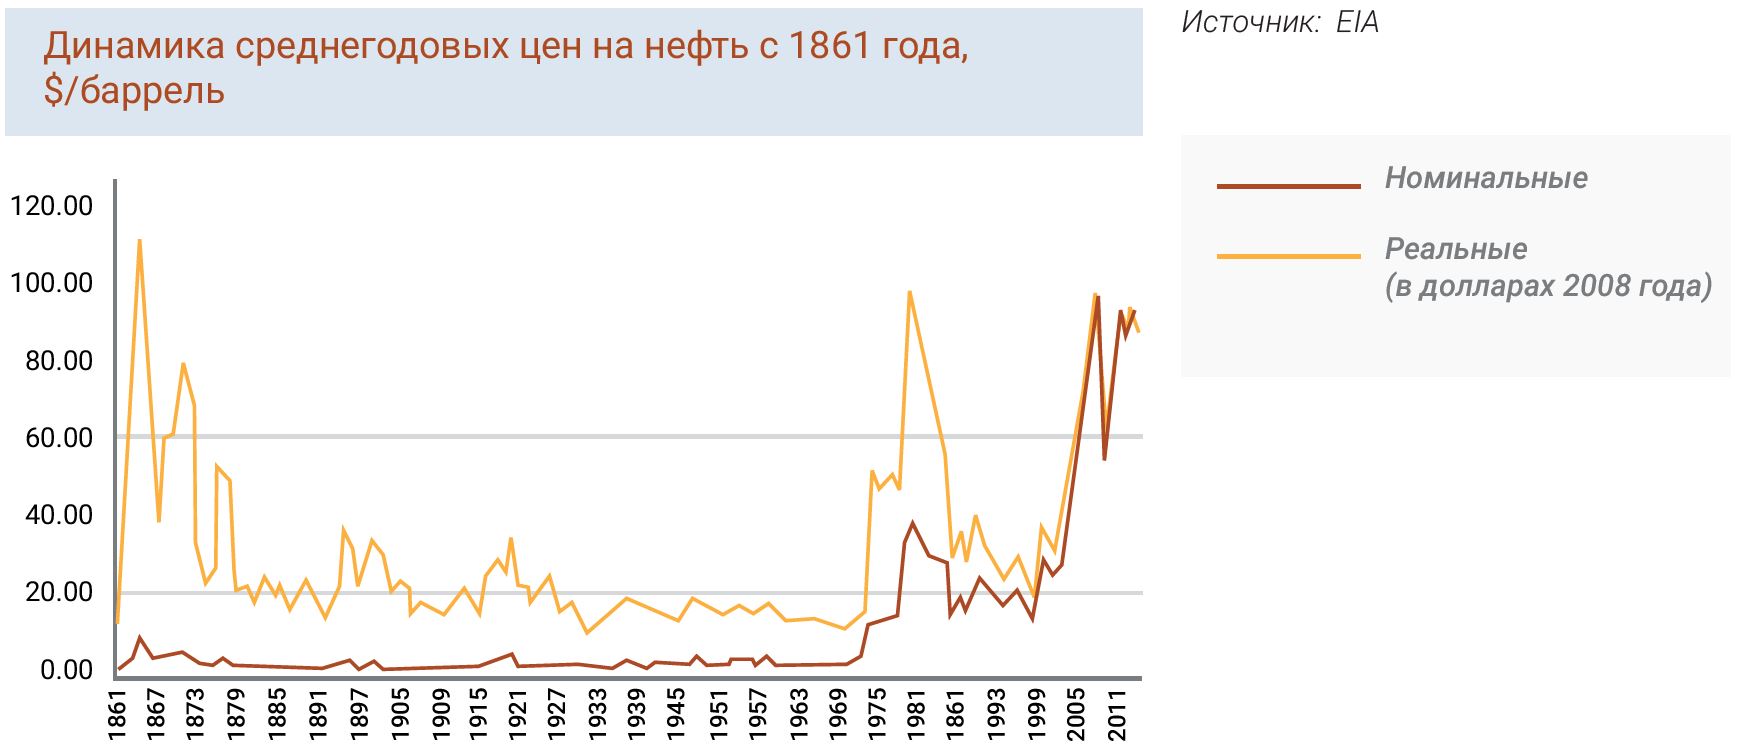 Динамика среднегодовых цен на нефть с 1861 года